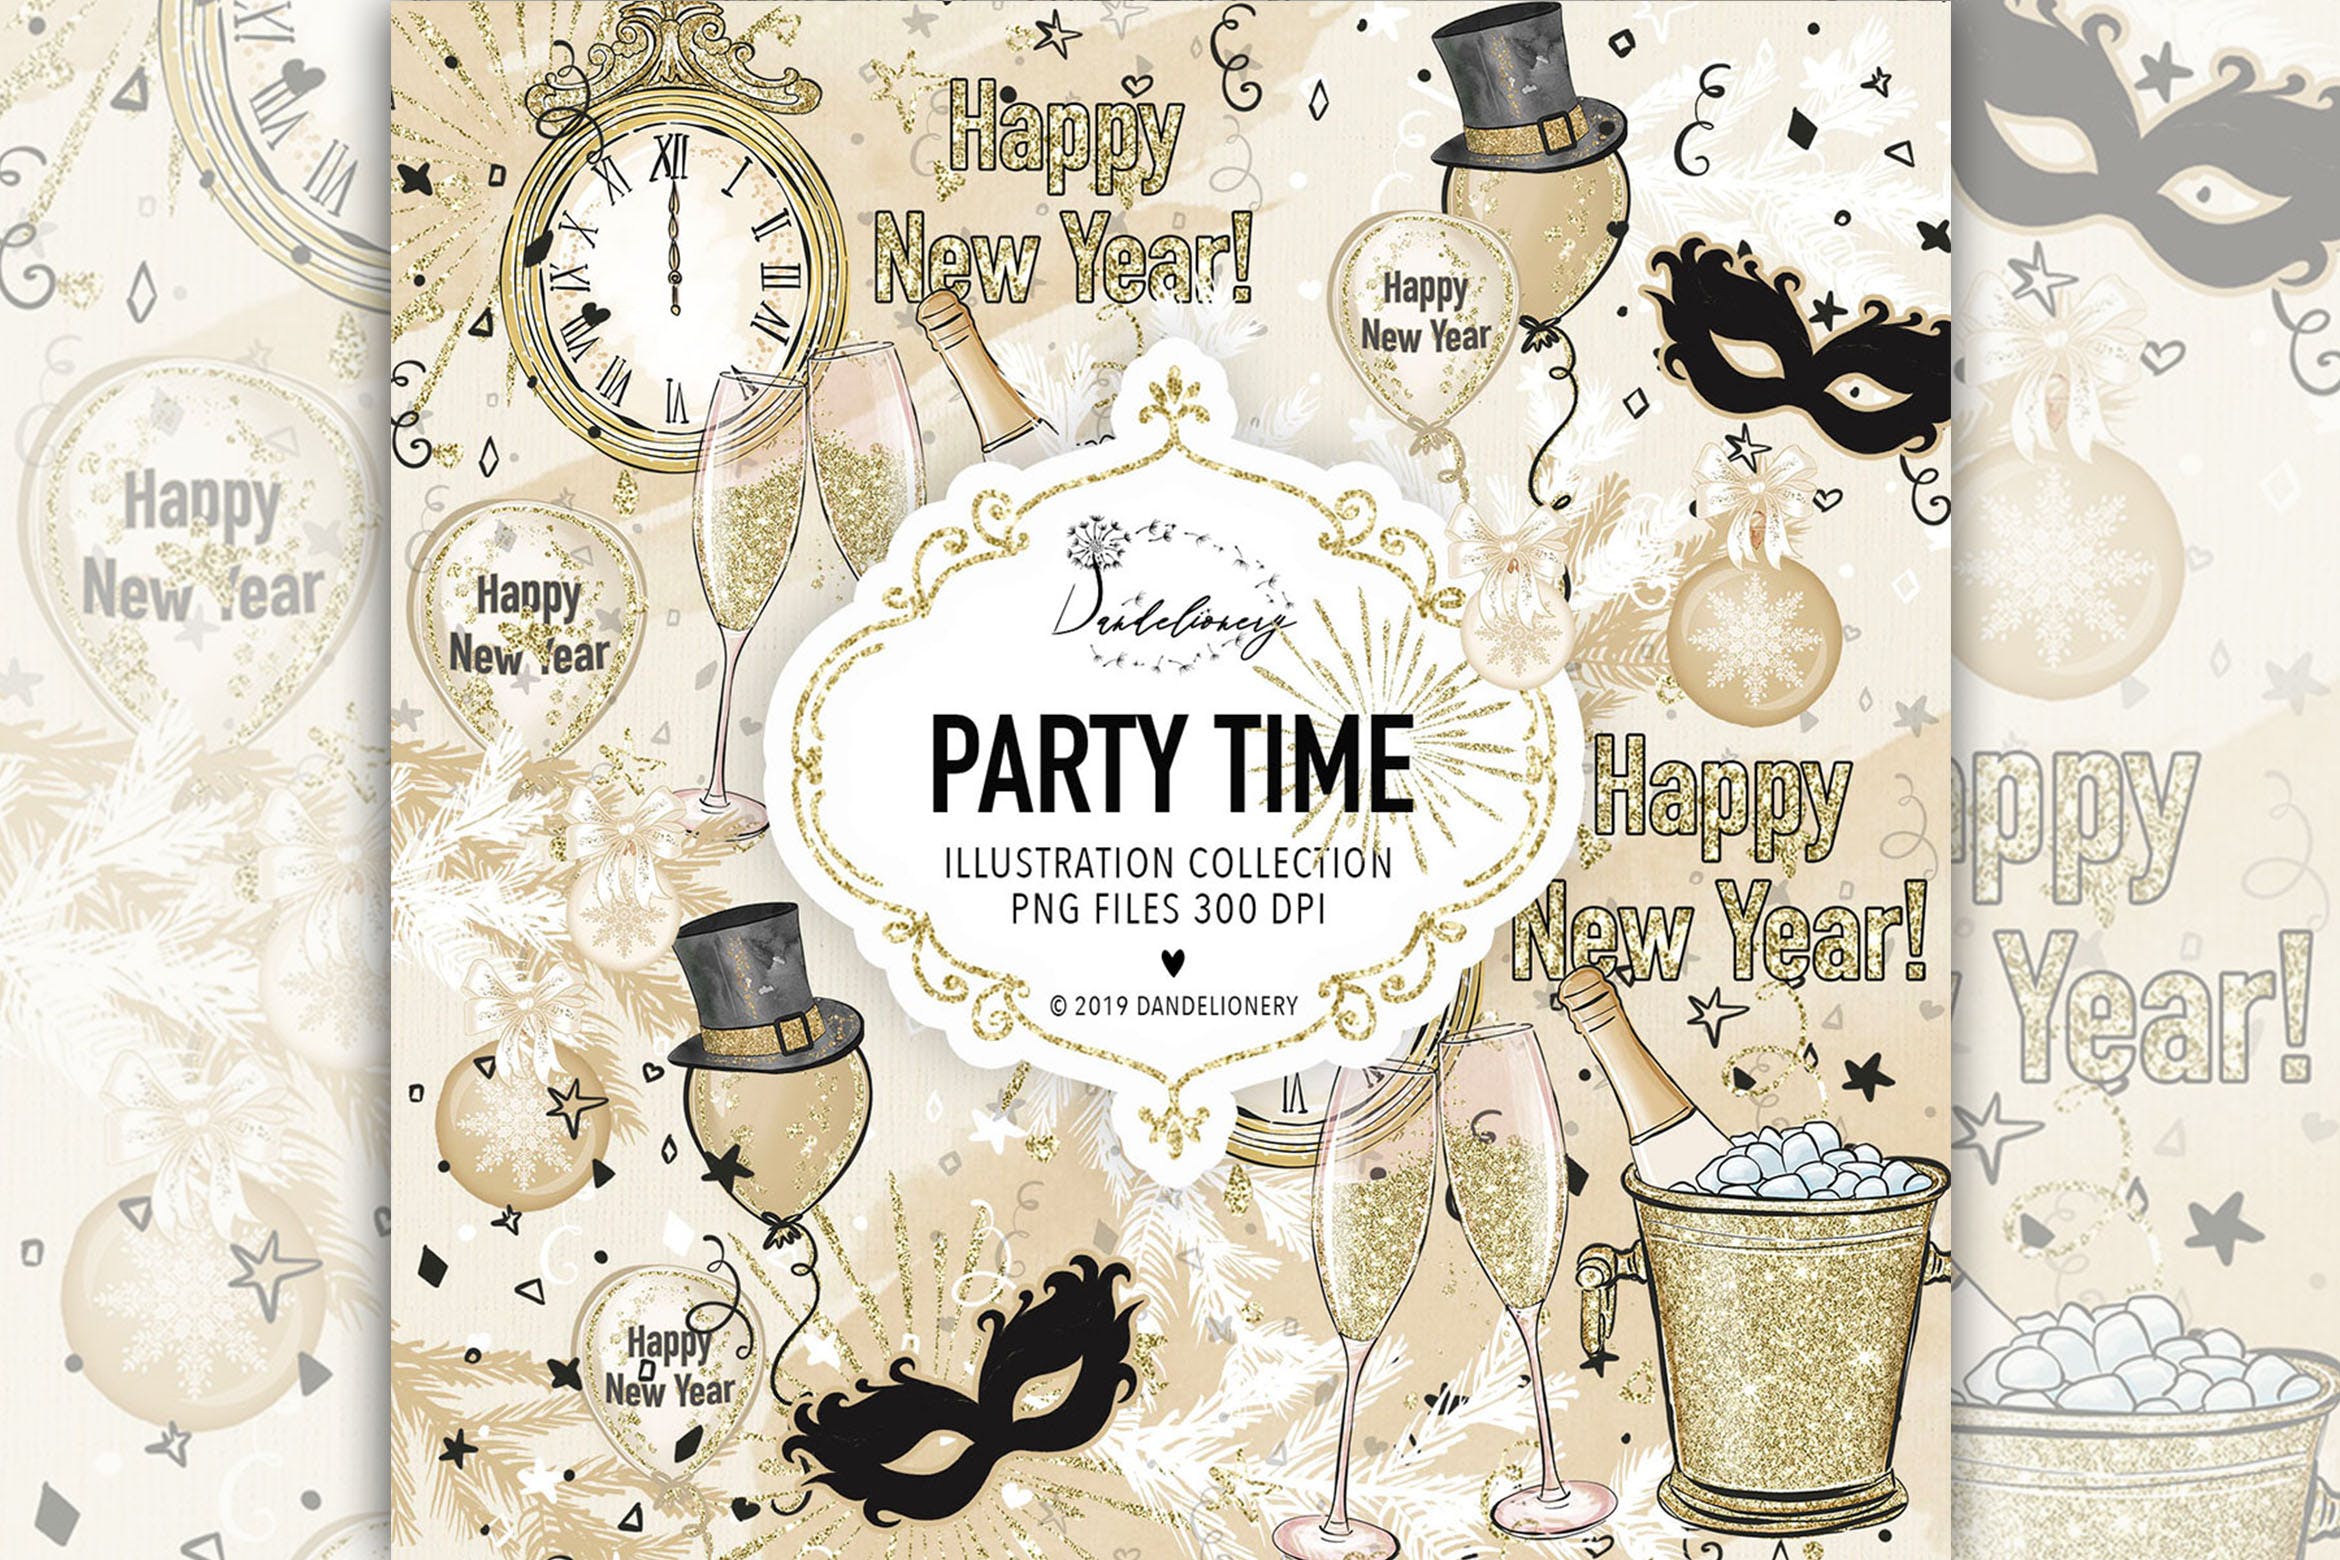 派对时光主题水彩手绘图案第一素材精选设计素材 Party Time design插图